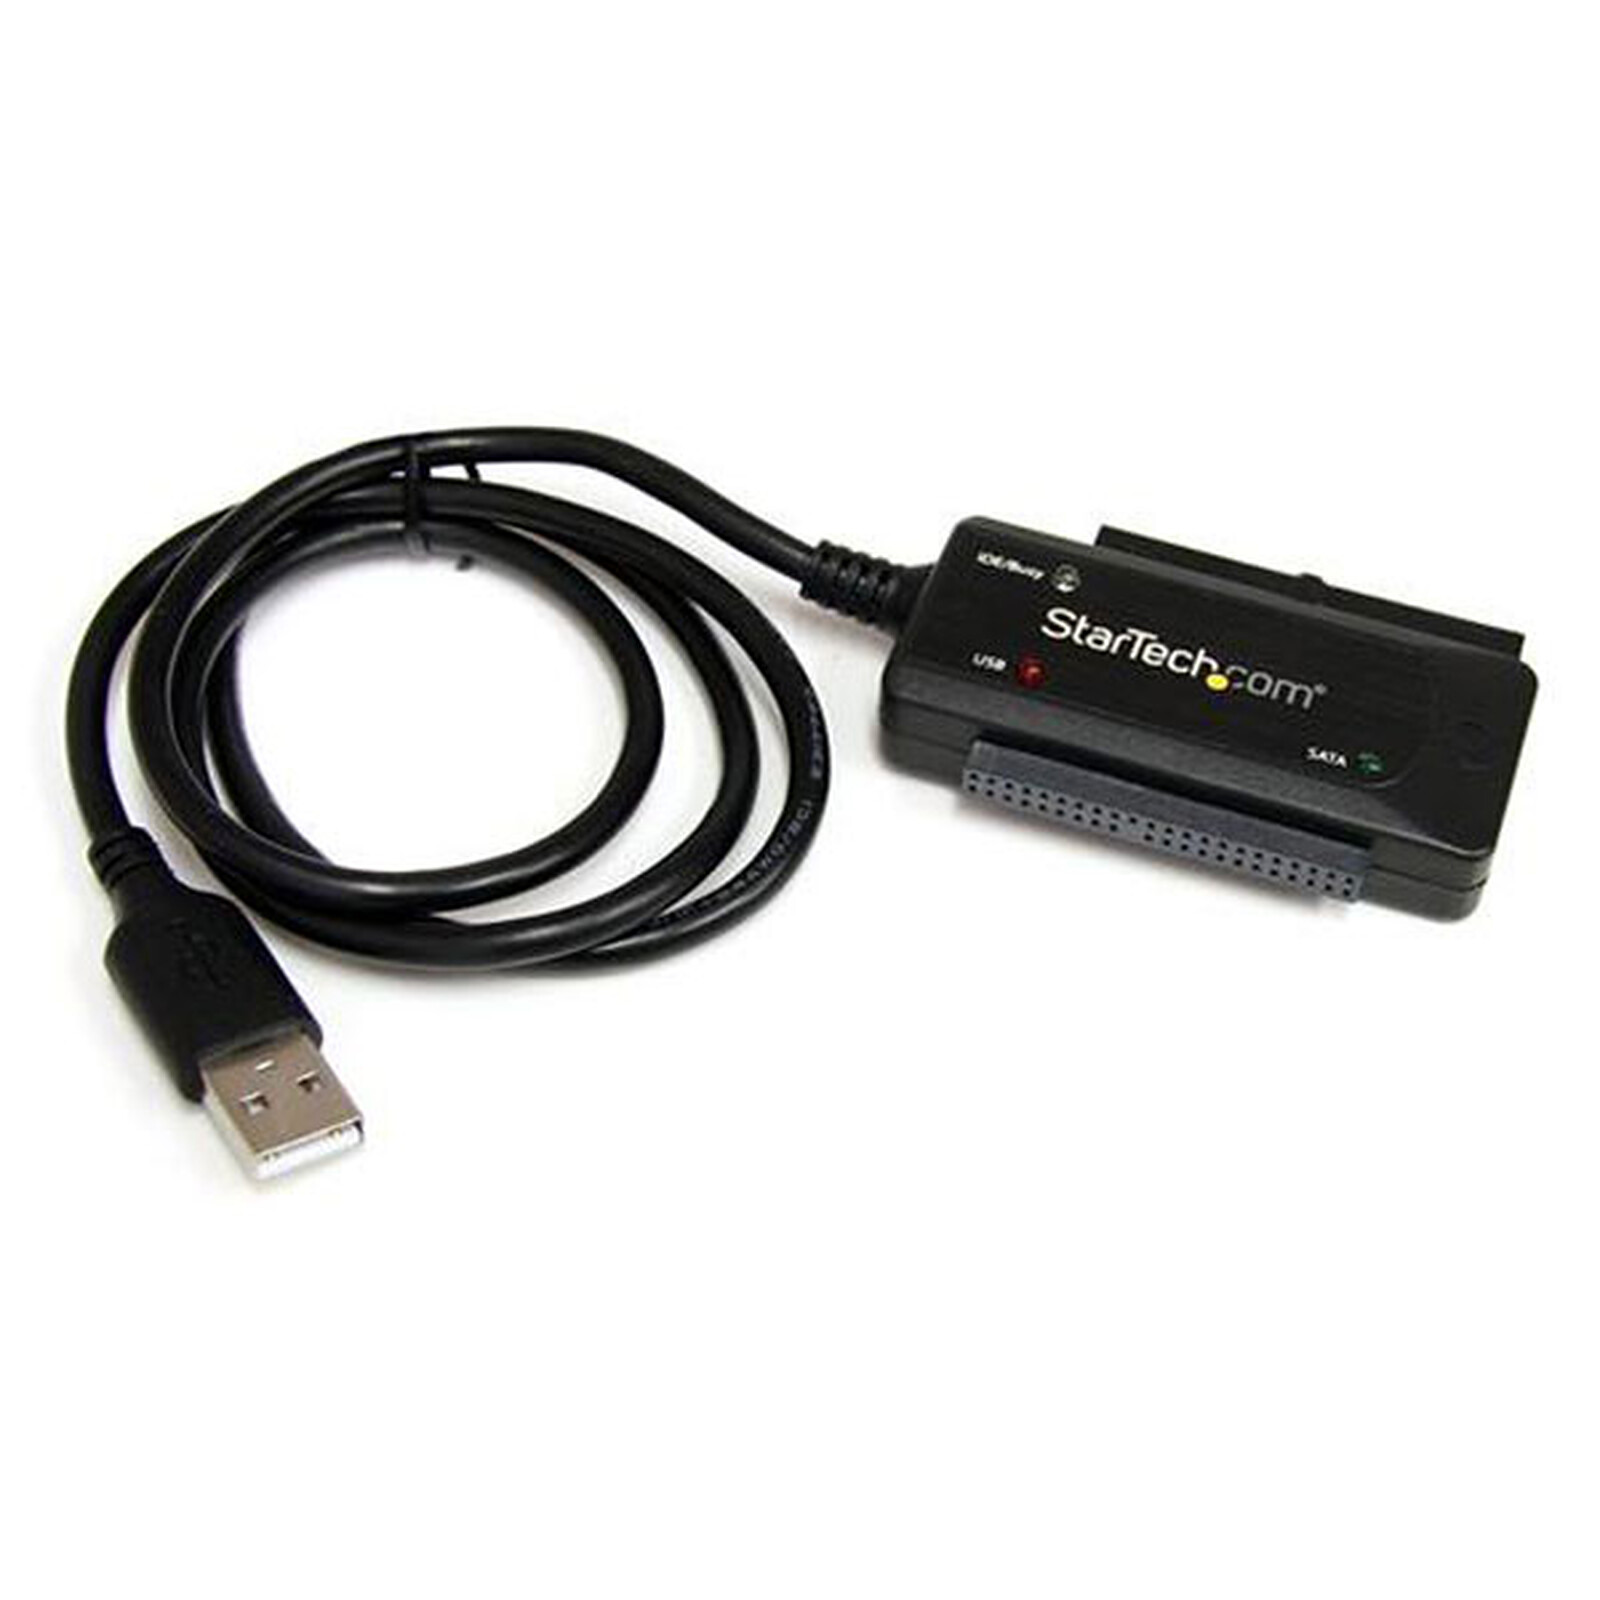 Adaptateur Convertisseur USB 2.0 vers IDE / SATA pour Disque Dur 2.5 / 3.5